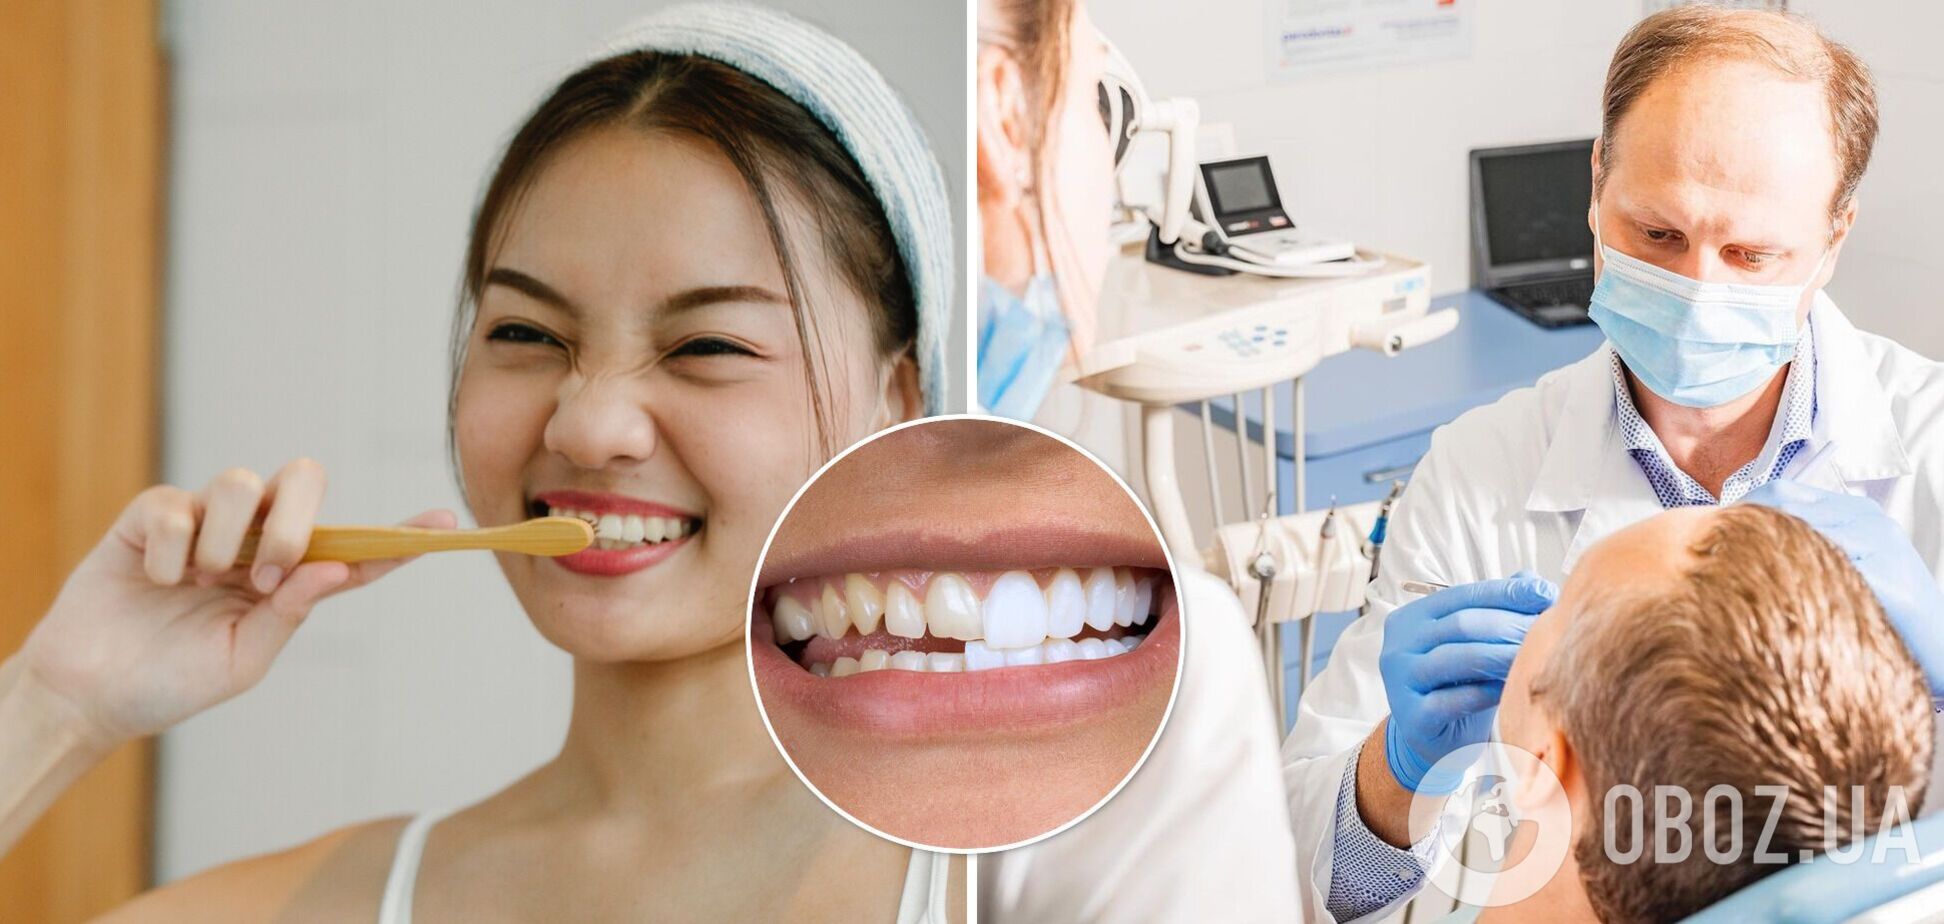 Виниры или свои зубы: стоматолог назвал плюсы и минусы голливудской улыбки